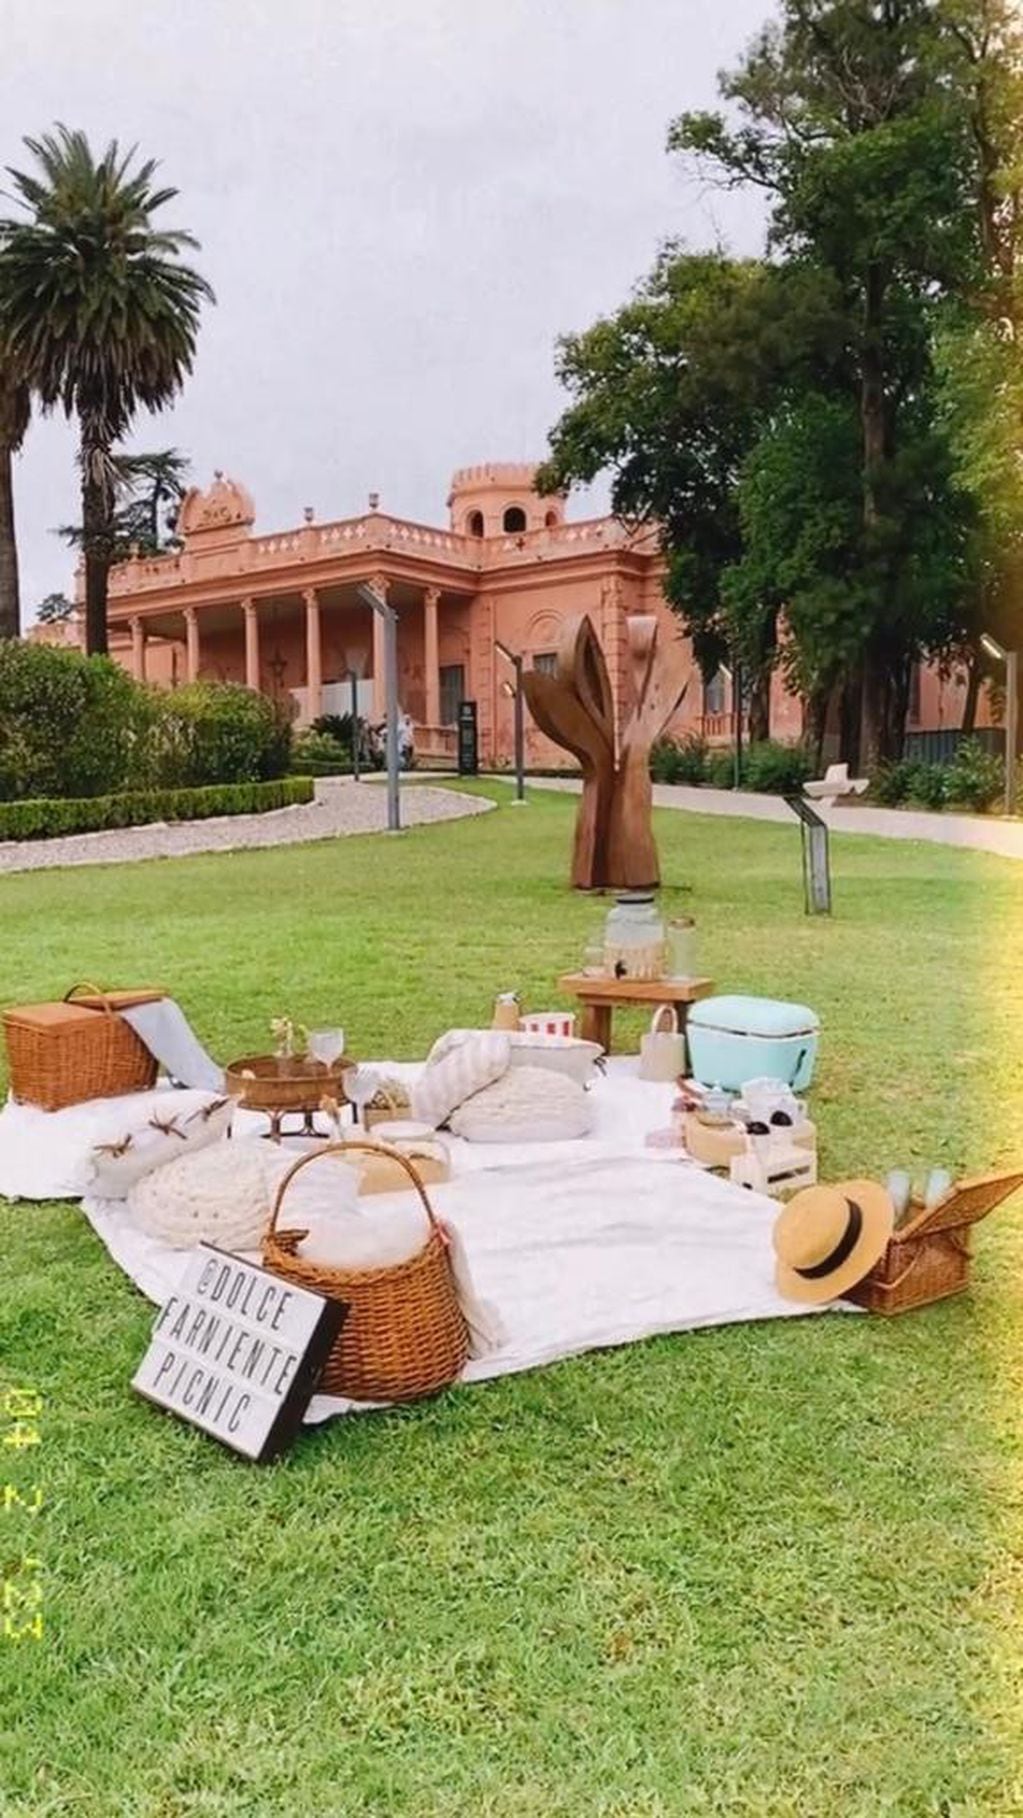 Los picnic suelen realizarse en el Parque del Chateau.